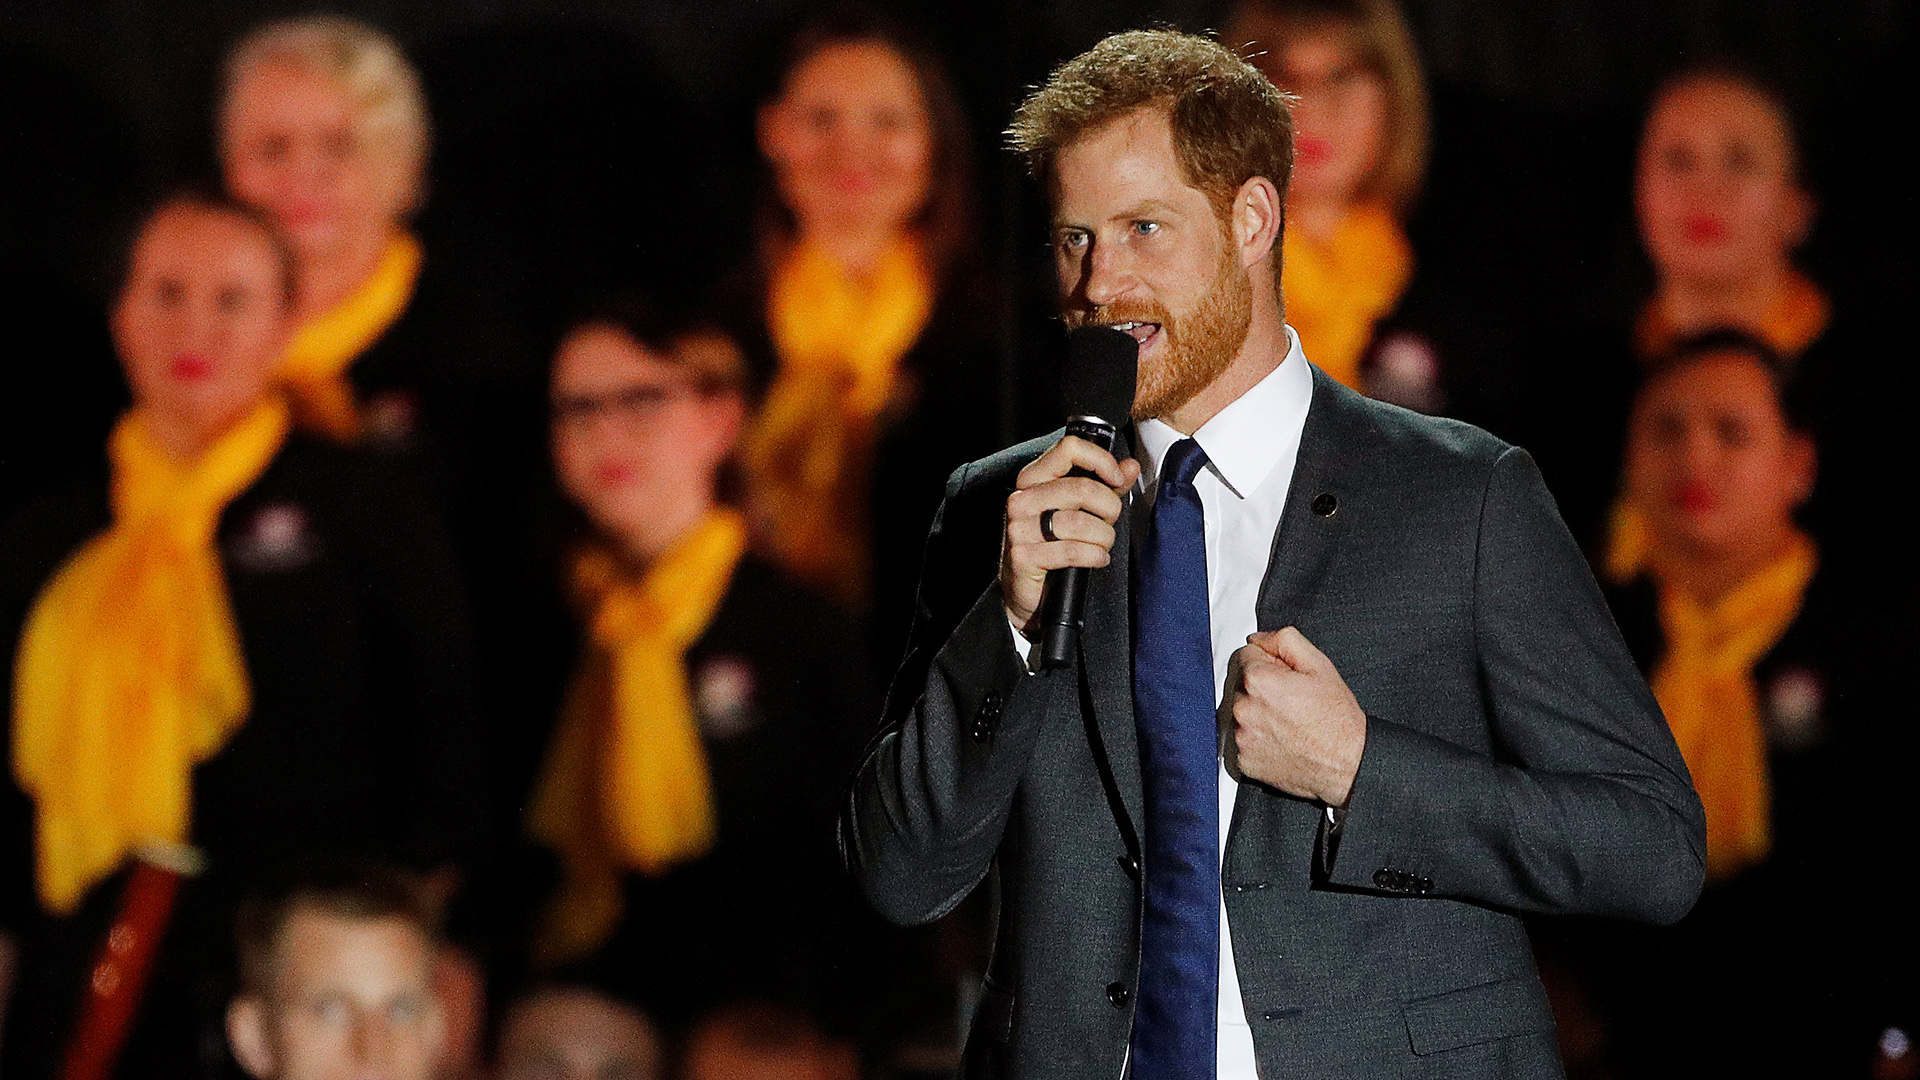 El príncipe Harry dio un emotivo discurso en la ceremonia de apertura de los Juegos Invictus (REUTERS/Phil Noble)